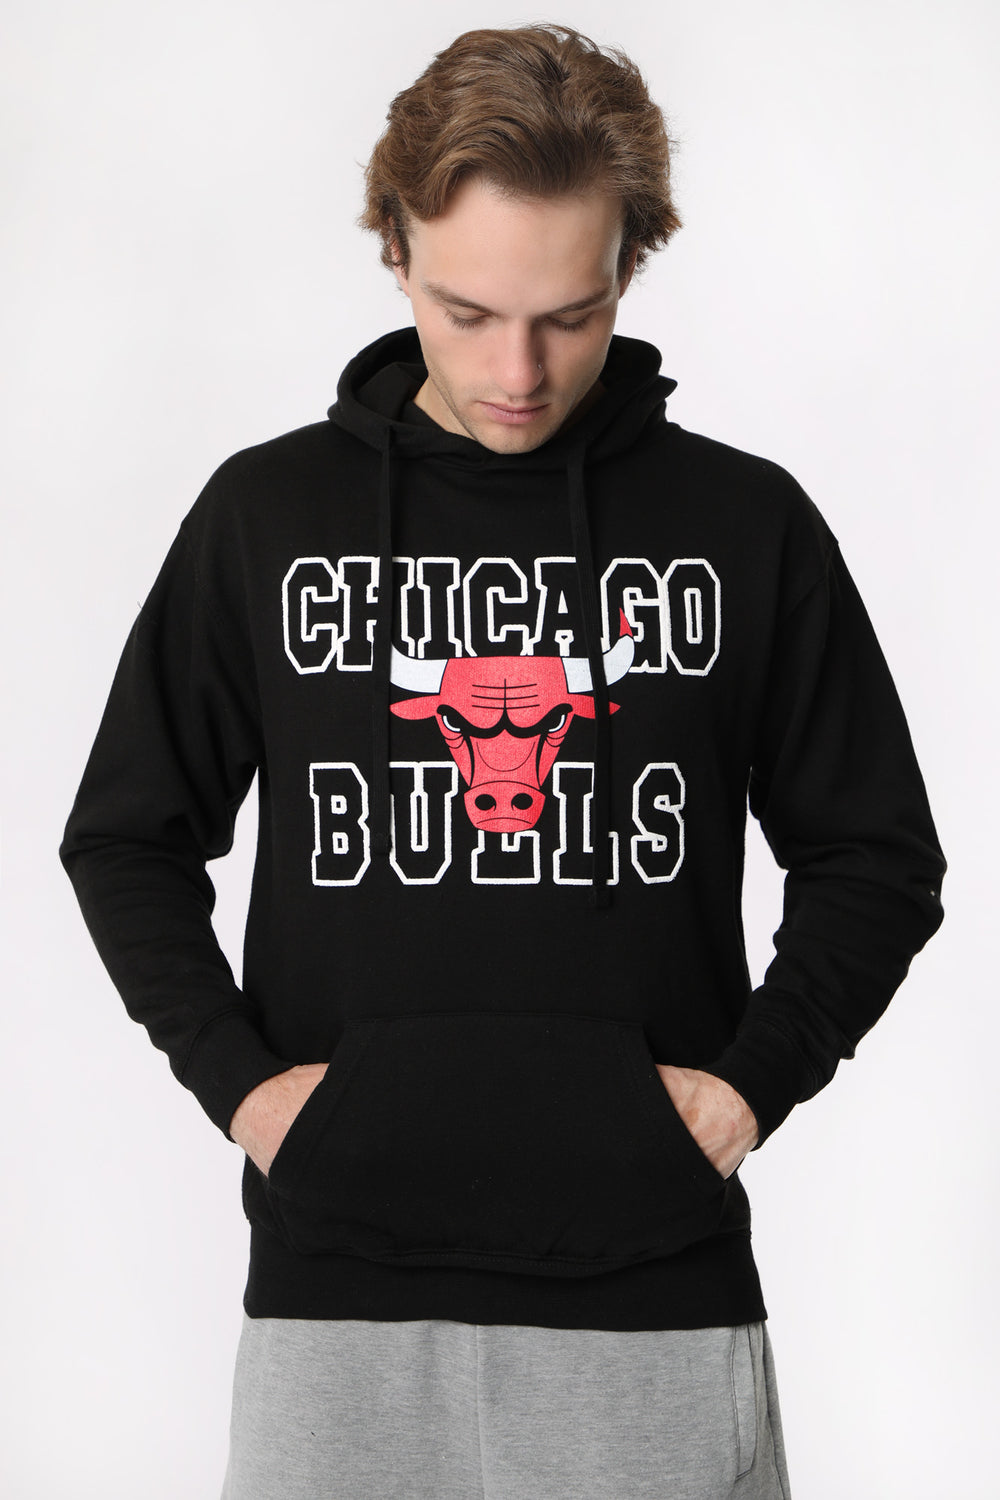 Haut à Capuchon Imprimé Chicago Bulls Homme Haut à Capuchon Imprimé Chicago Bulls Homme